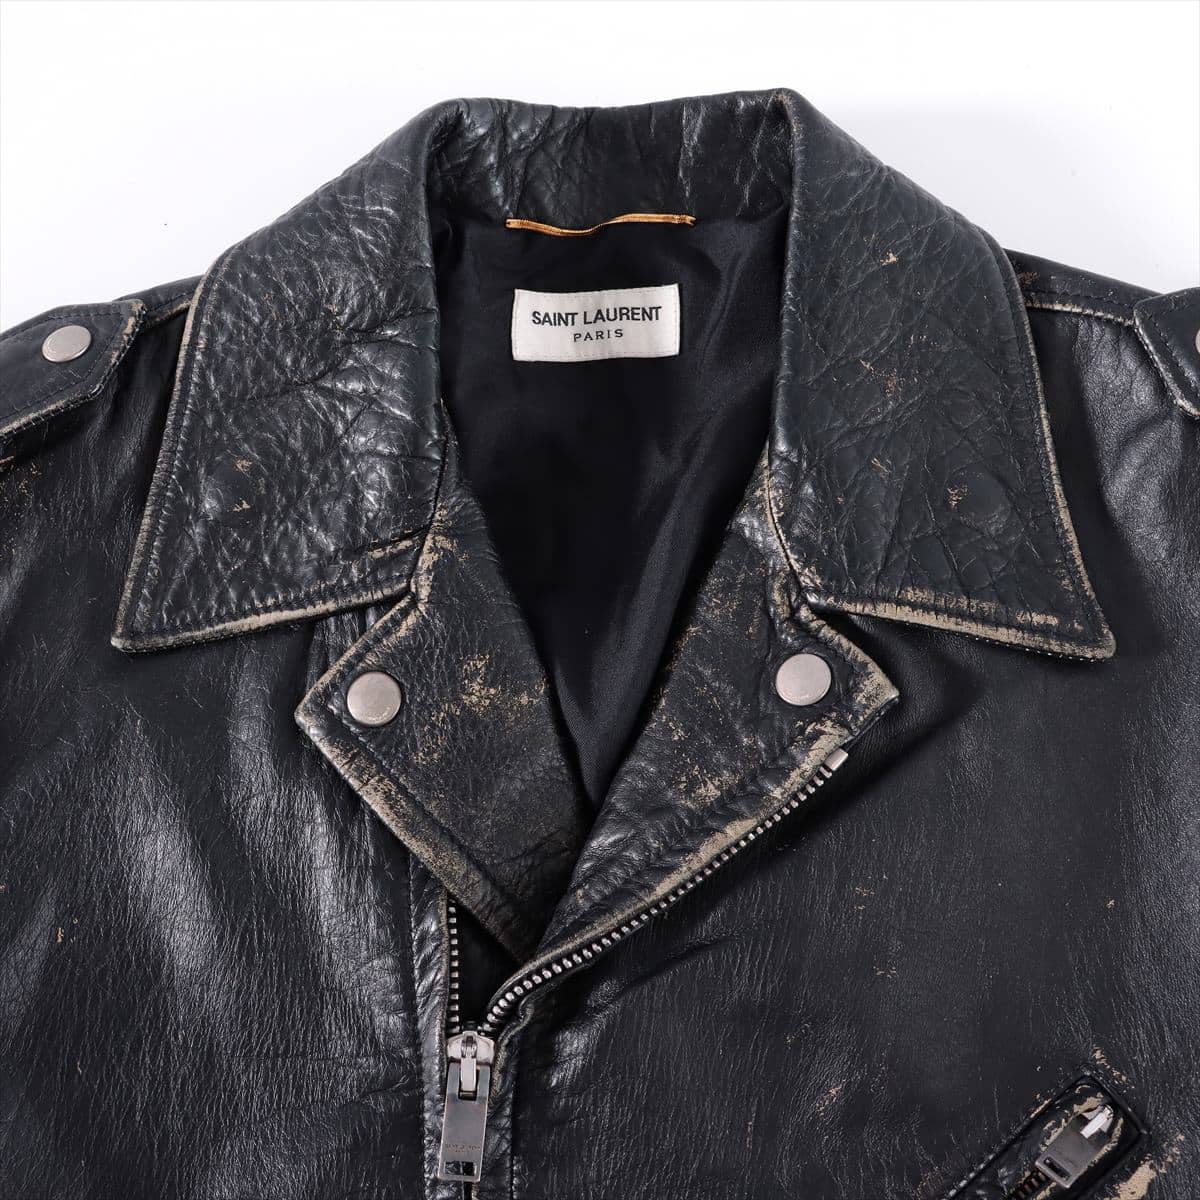 Saint Laurent Paris Leather Leather jacket Unknown size Ladies' Black No sign tag Vintage processing